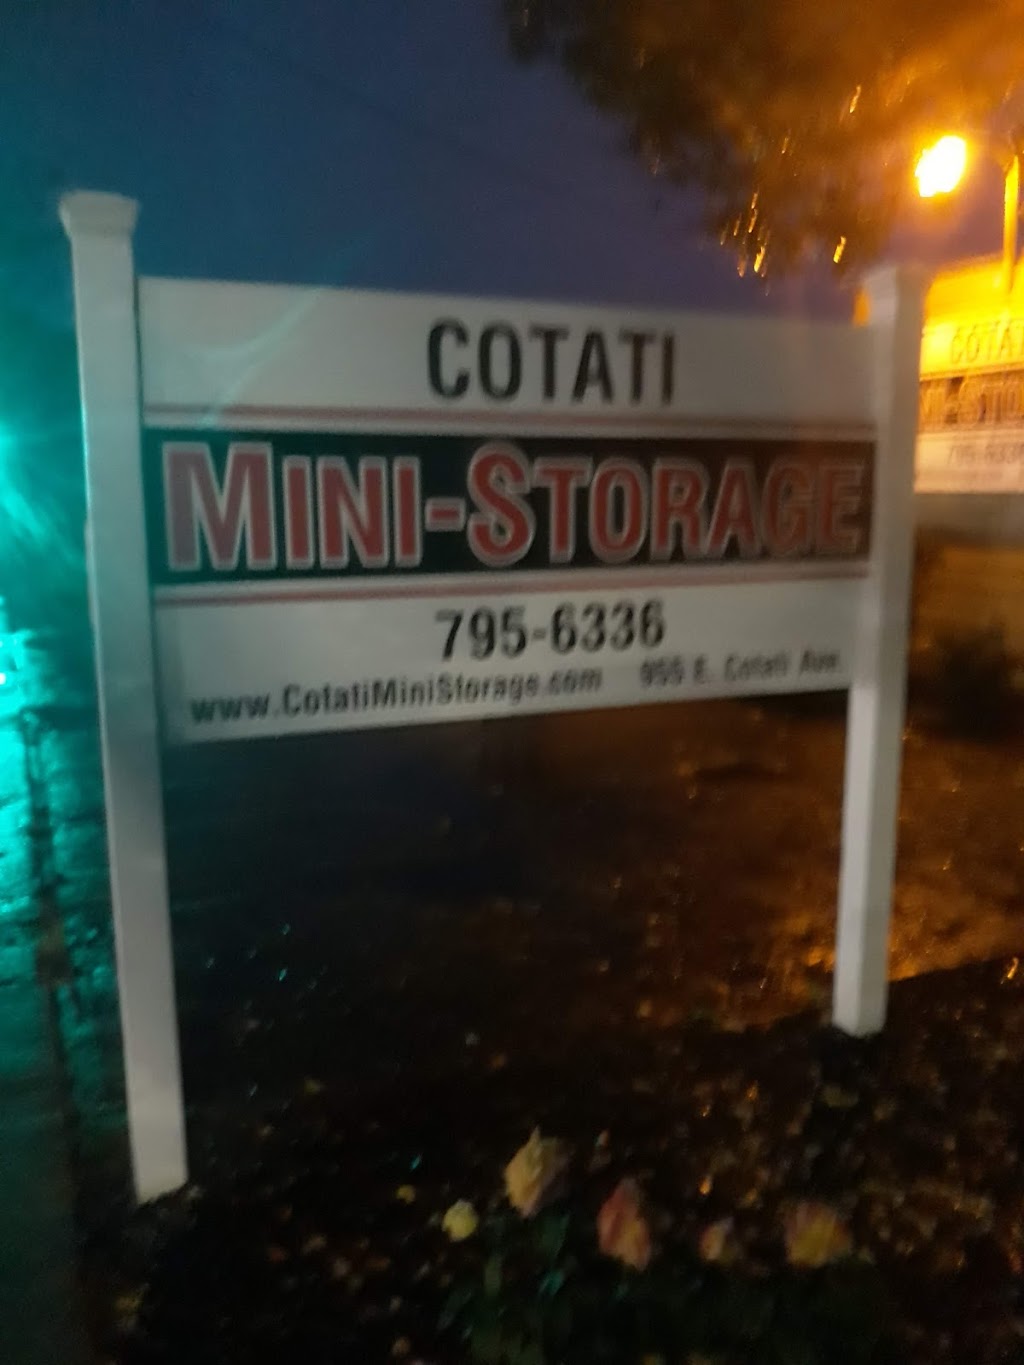 Cotati Mini Storage | 955 E Cotati Ave, Cotati, CA 94931 | Phone: (707) 795-6336